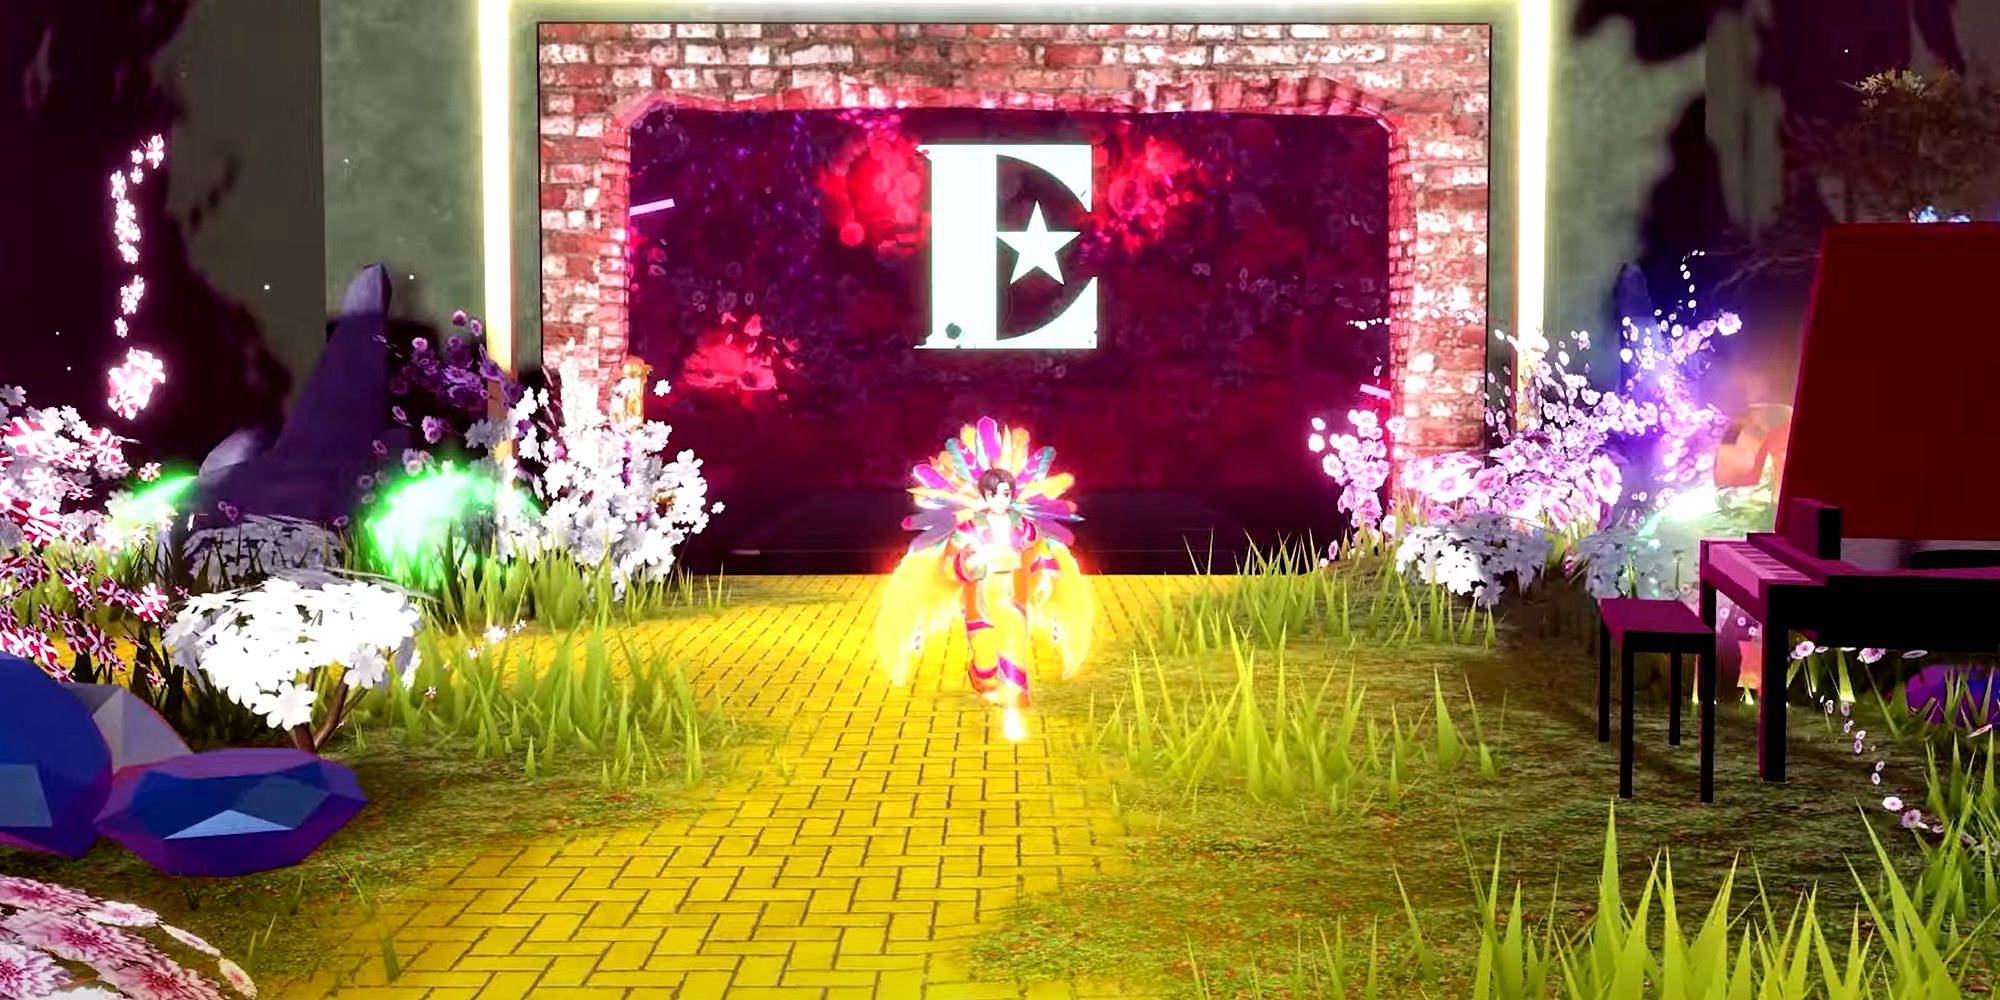 Captura de tela do evento Yellow Brick Road de Elton John com o personagem Roblox vestindo roupas inspiradas no evento.